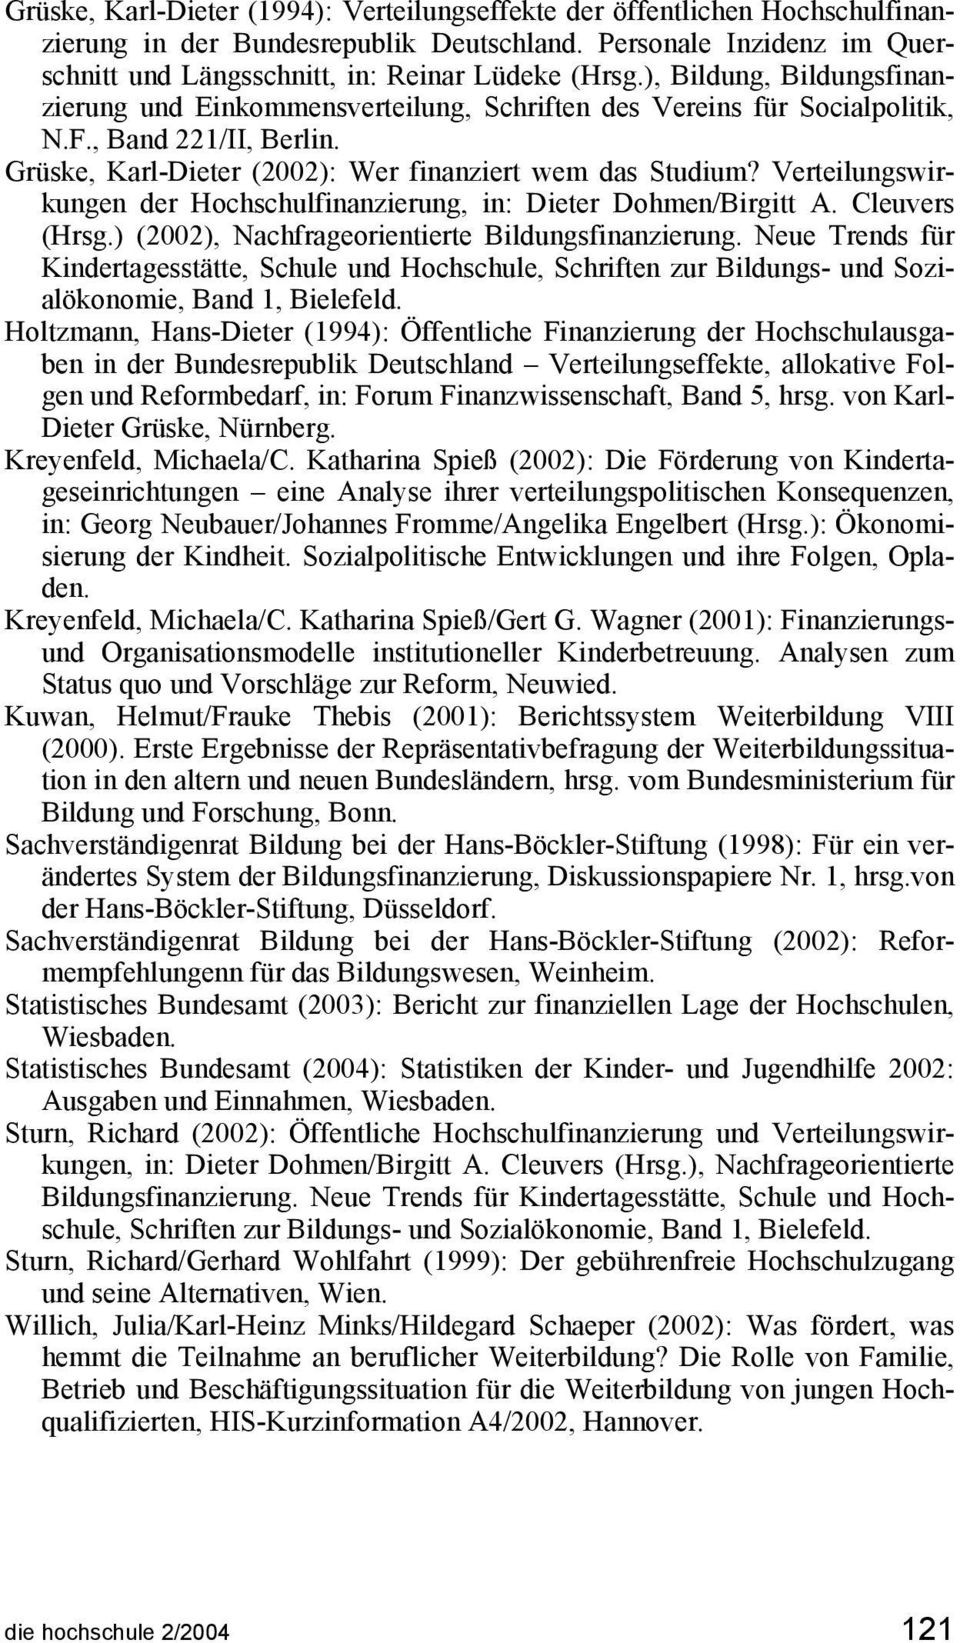 Verteilungswirkungen der Hochschulfinanzierung, in: Dieter Dohmen/Birgitt A. Cleuvers (Hrsg.) (2002), Nachfrageorientierte Bildungsfinanzierung.